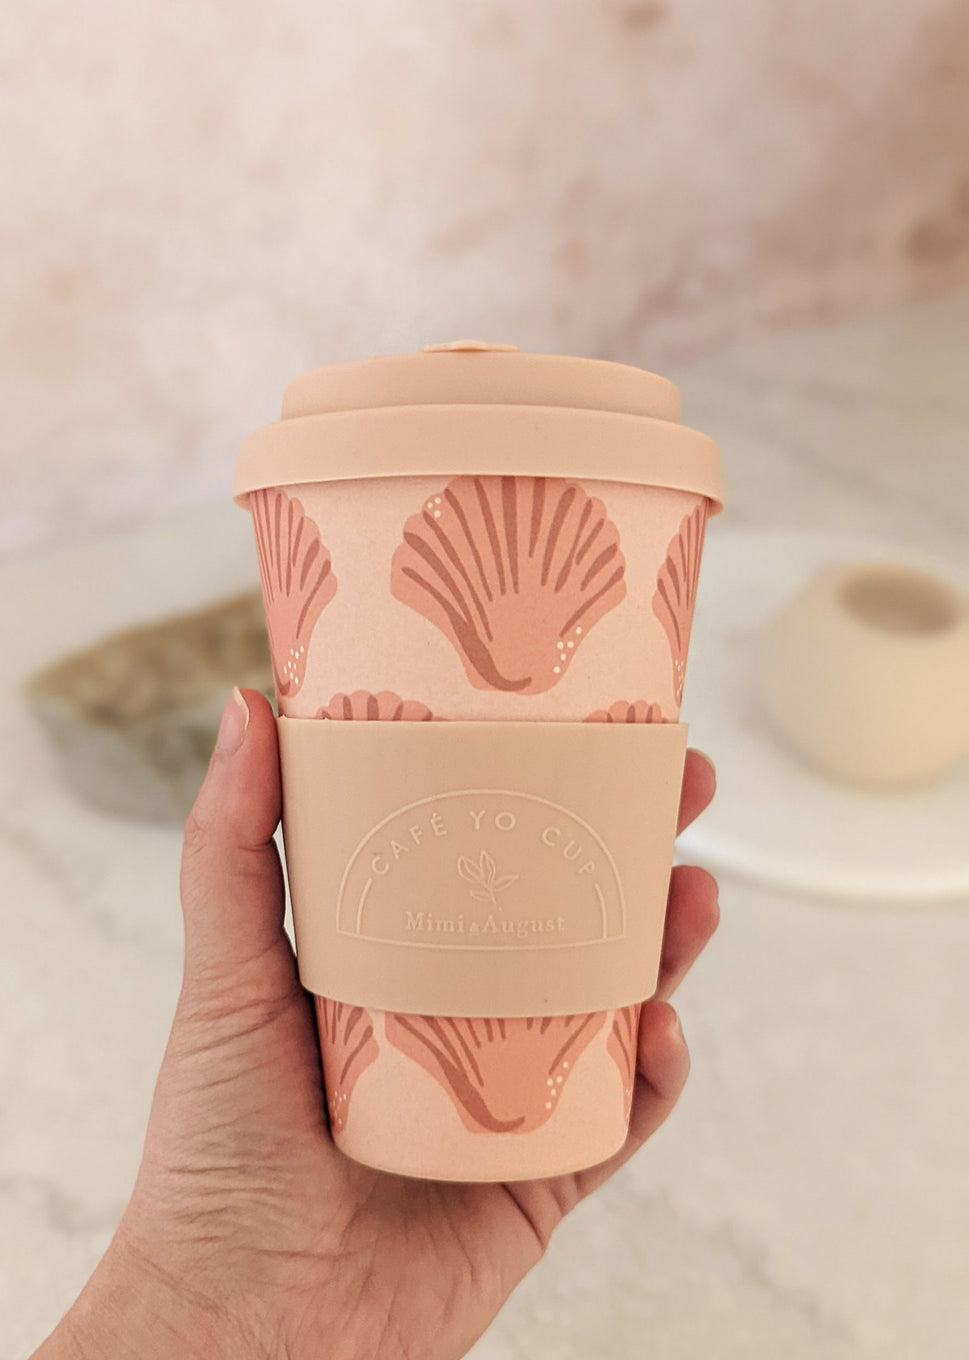 Seashells Cafe Yo - Bamboo Reusable Cup